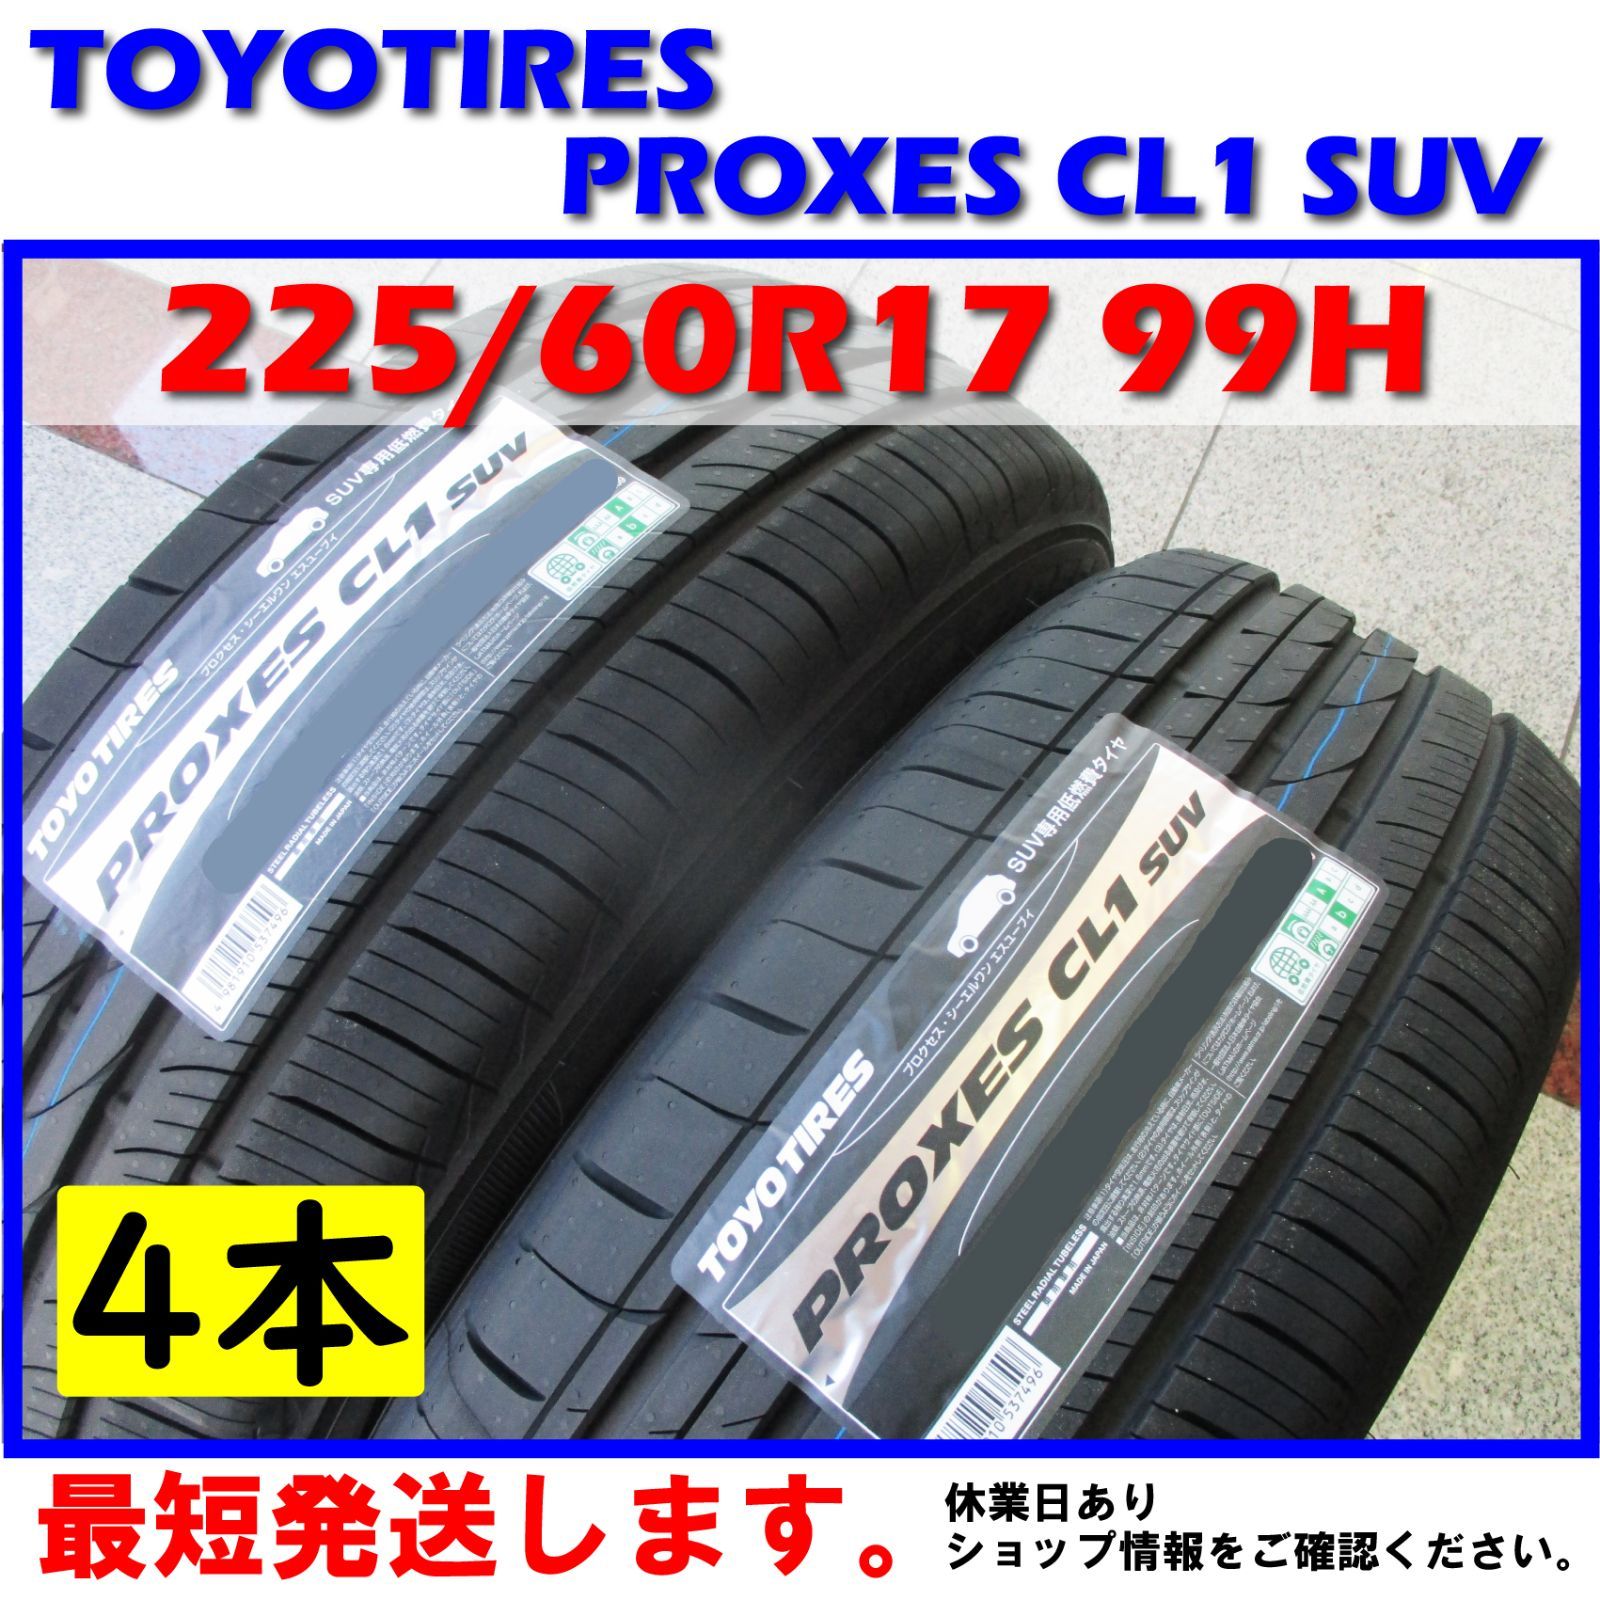 トーヨータイヤ PROXES CL1 SUV 215 50R18 92V サマータイヤ 4本セット - 17